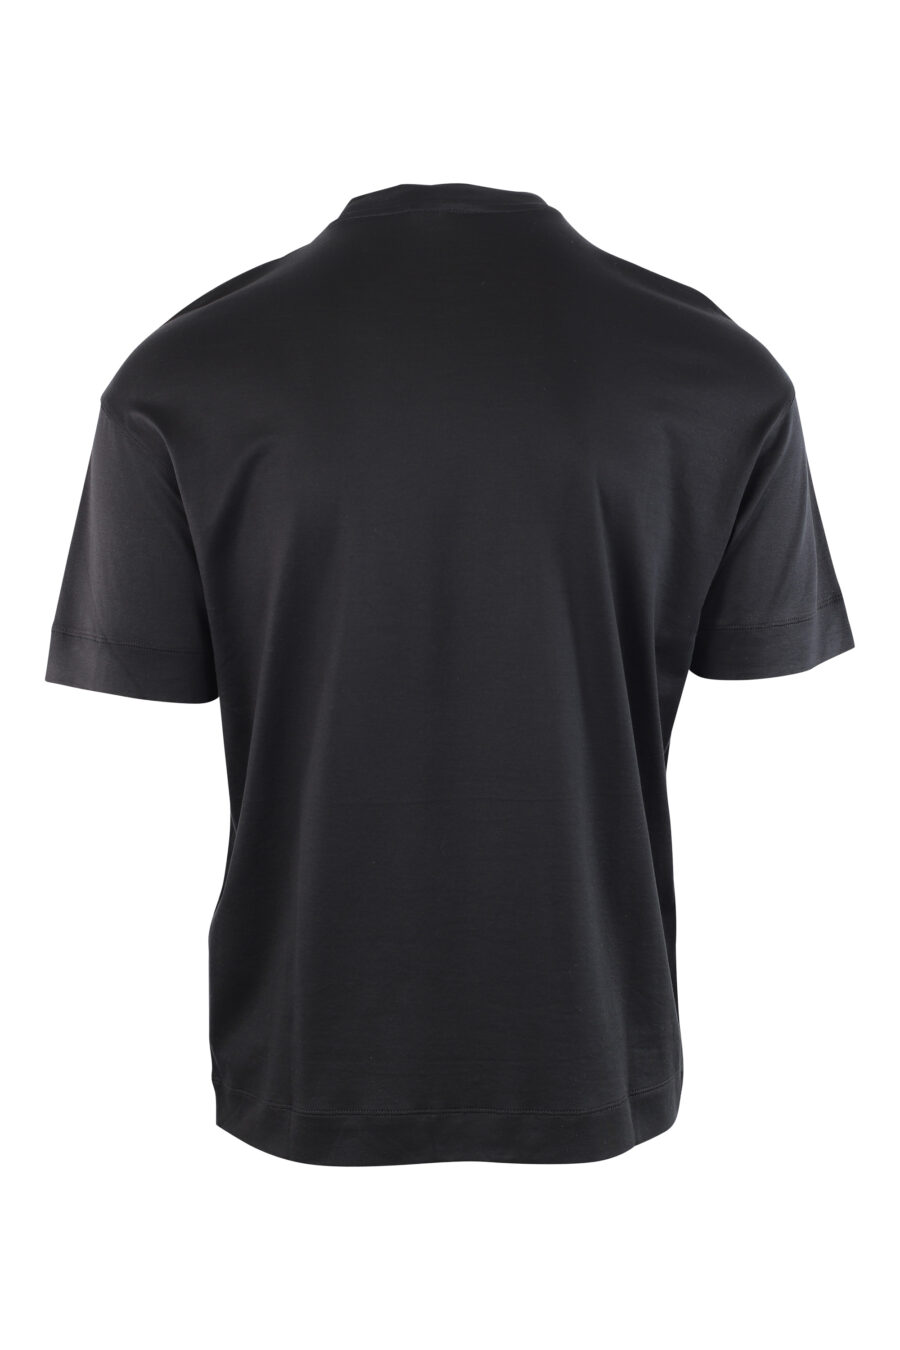 T-shirt noir avec logo monochrome centré - IMG 3783